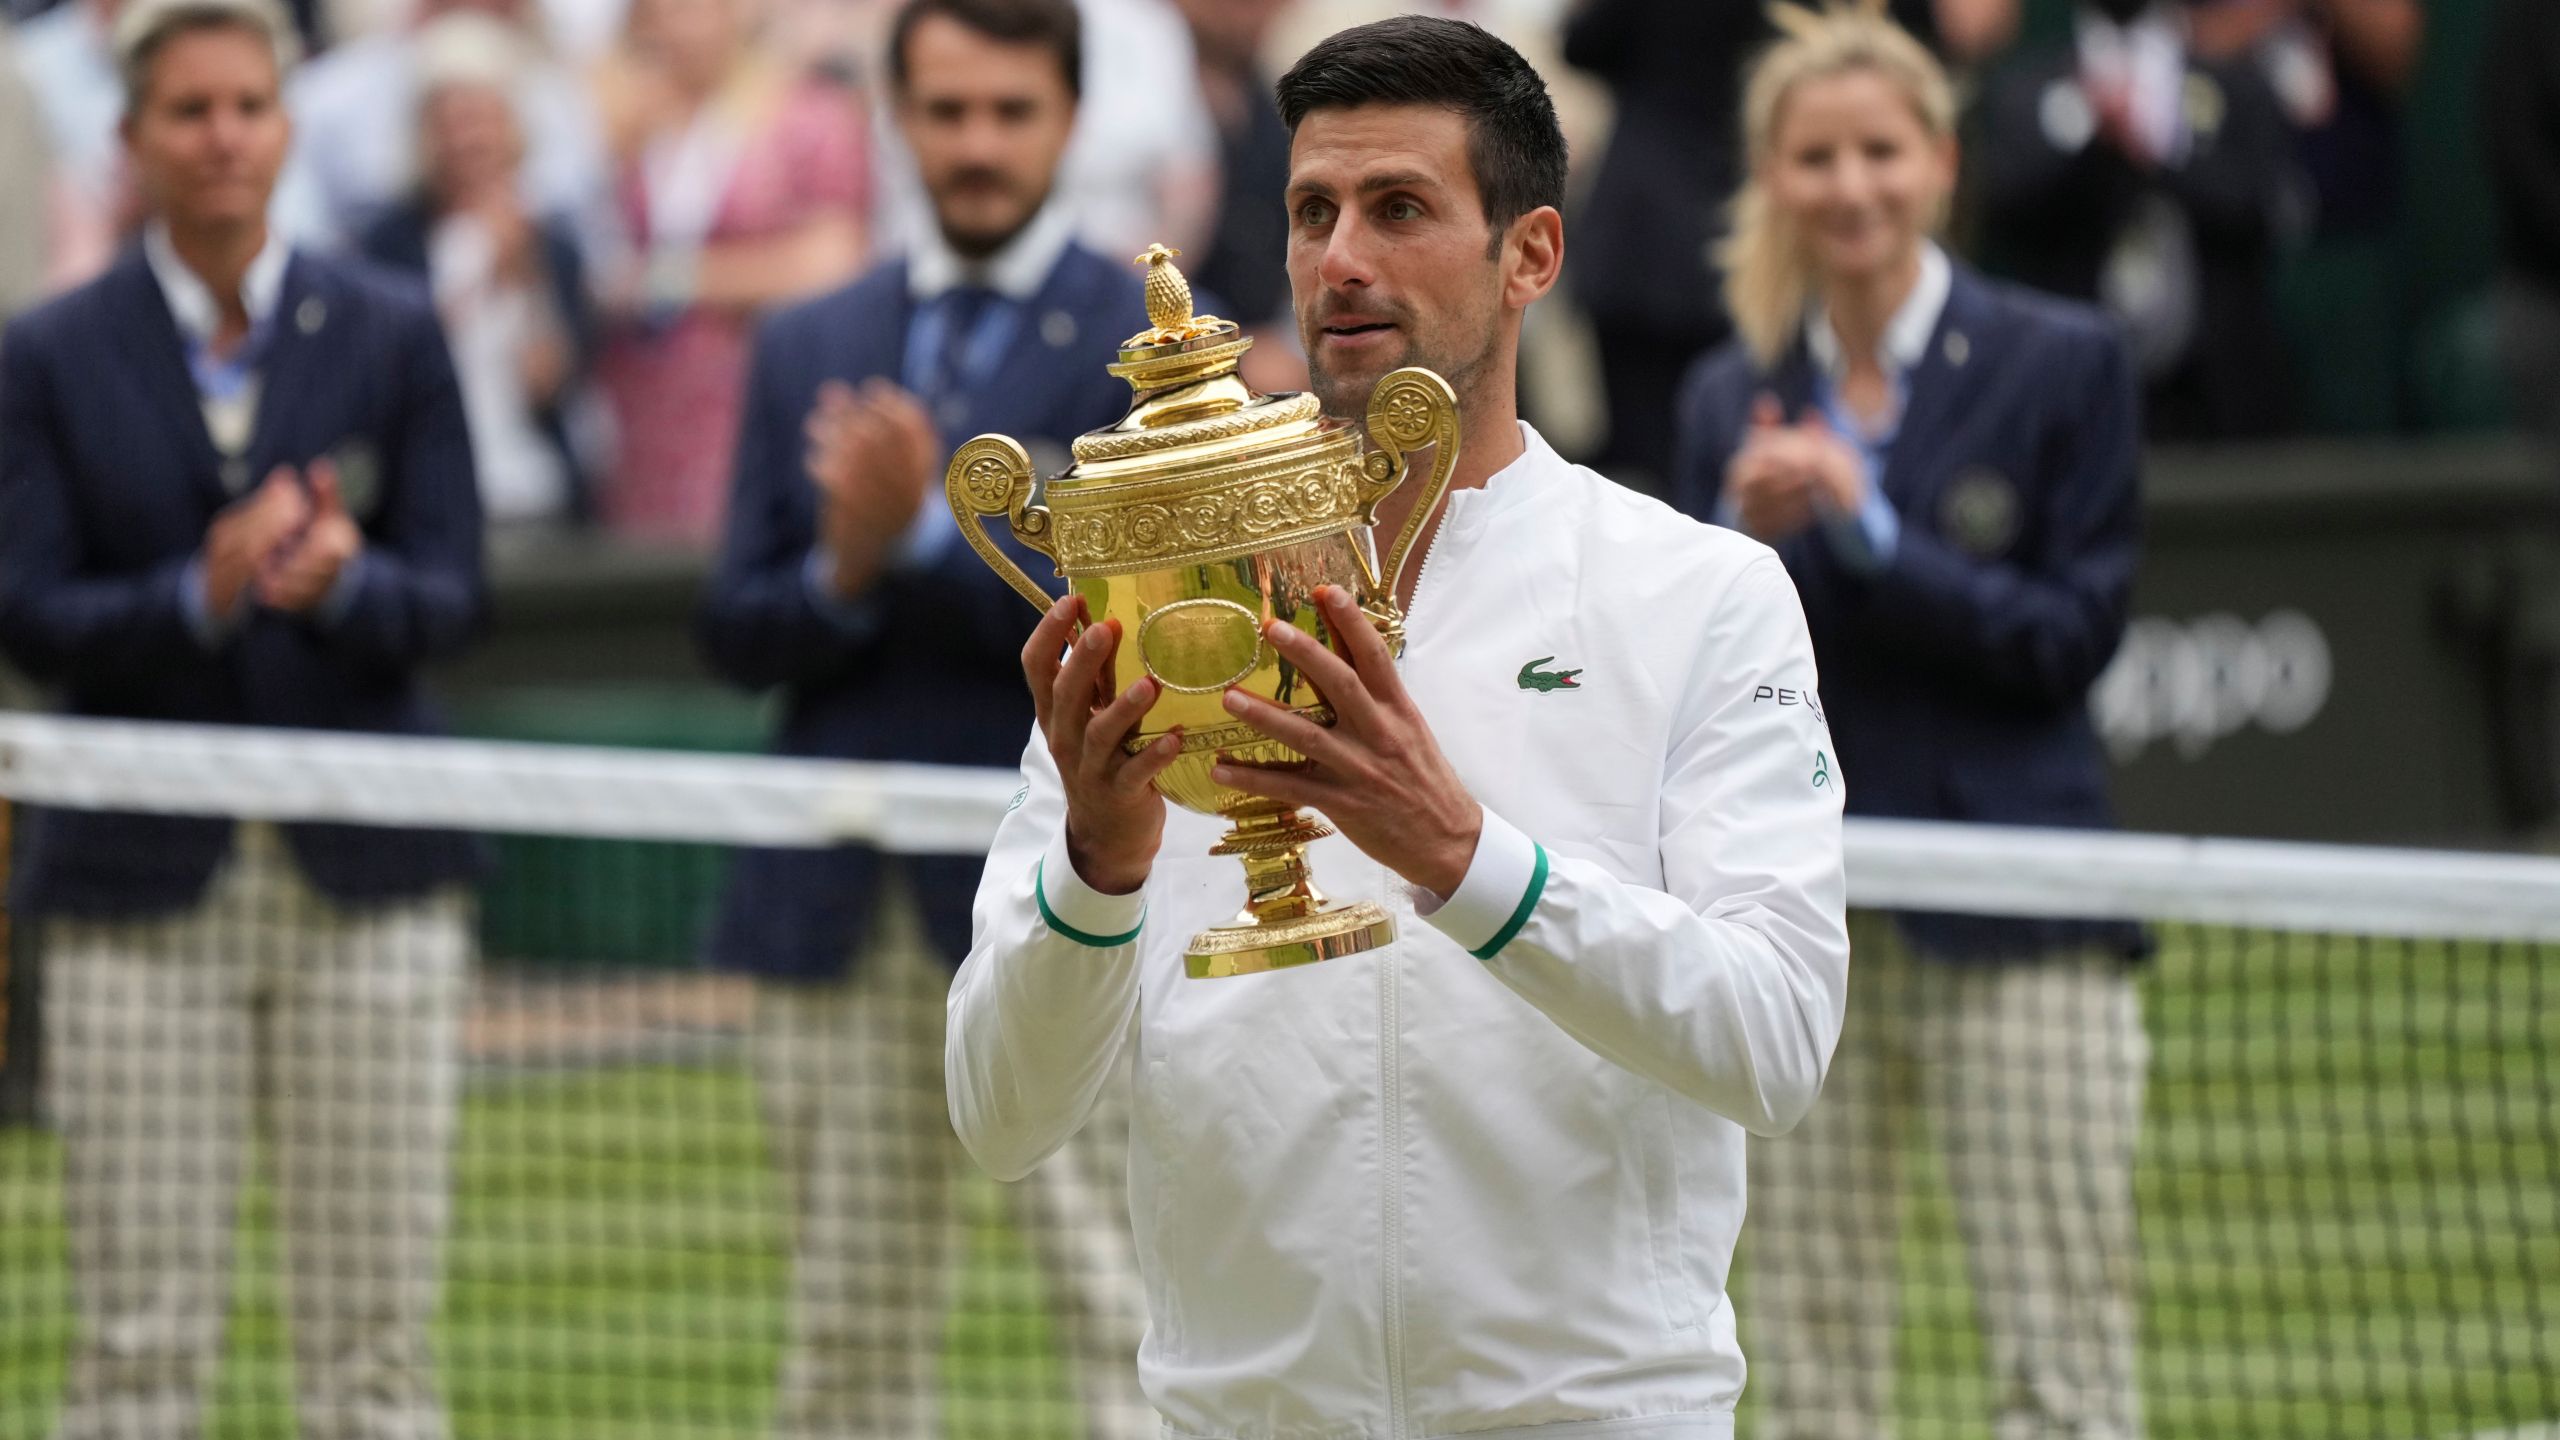 Novak Djokovic wins Wimbledon to tie Federer, Nadal with 20 Slams